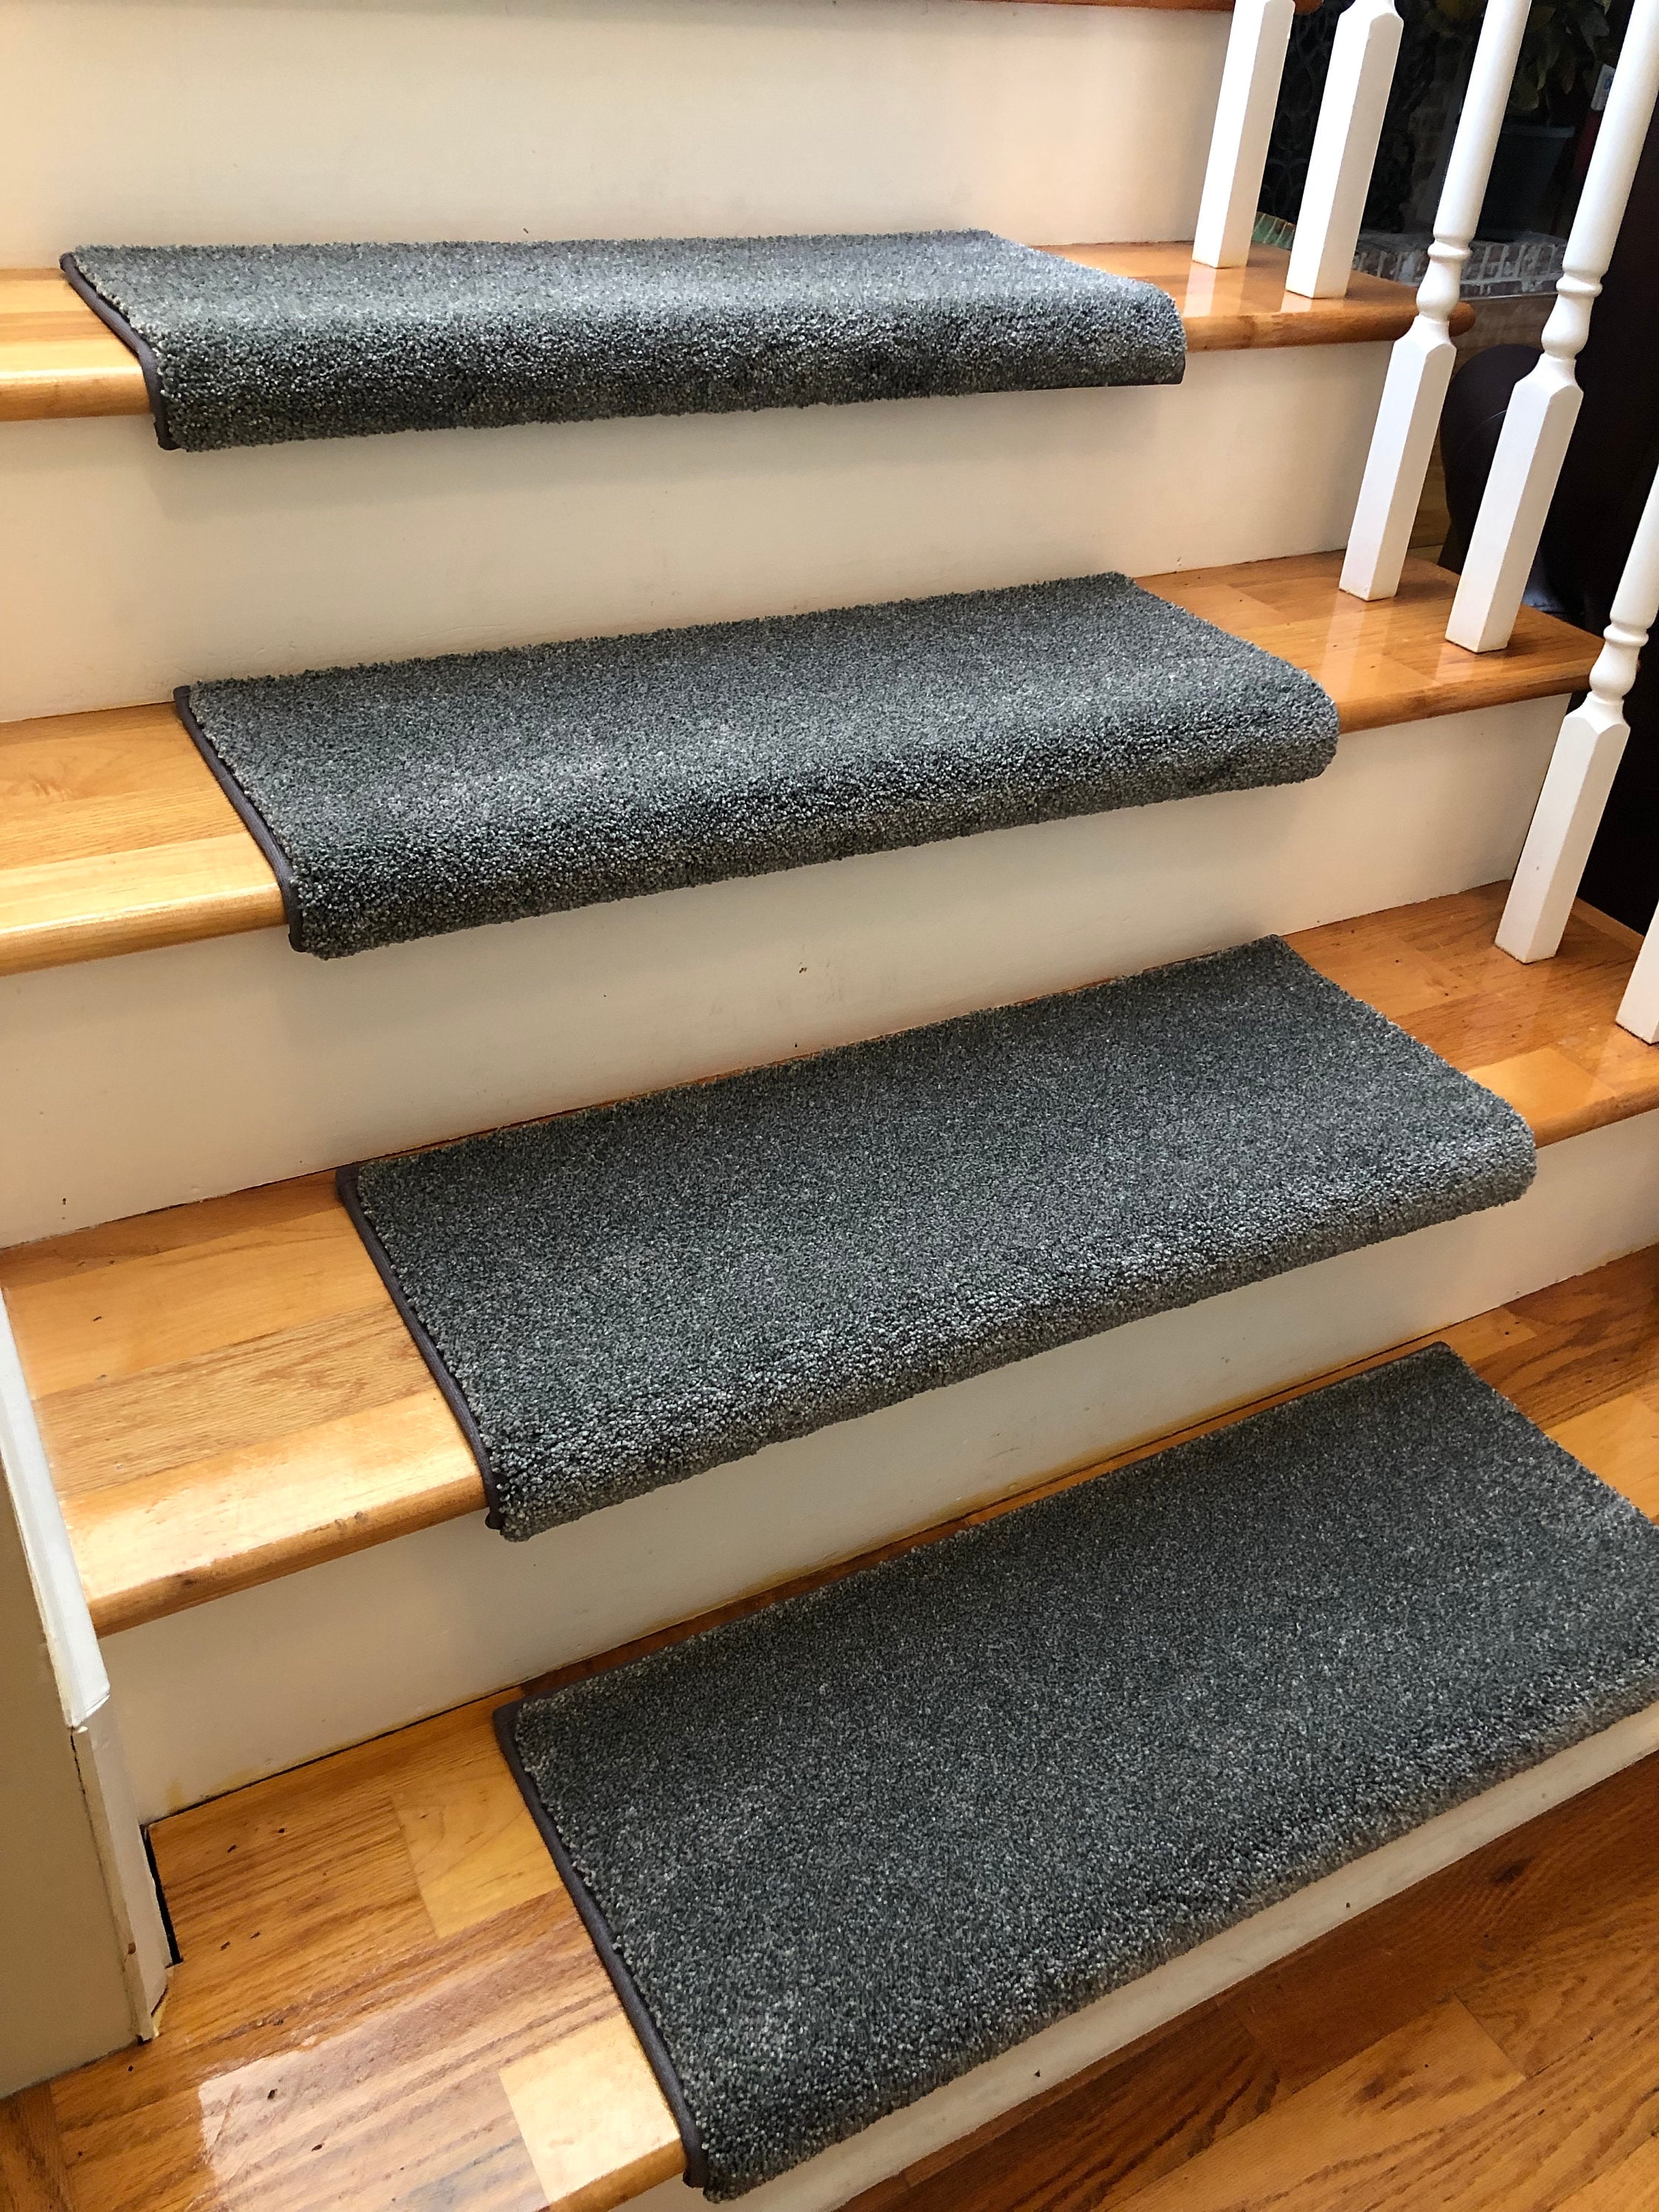 Non Slip Wool Carpet Runner & Stair Treads RIVER ROCK flannel 